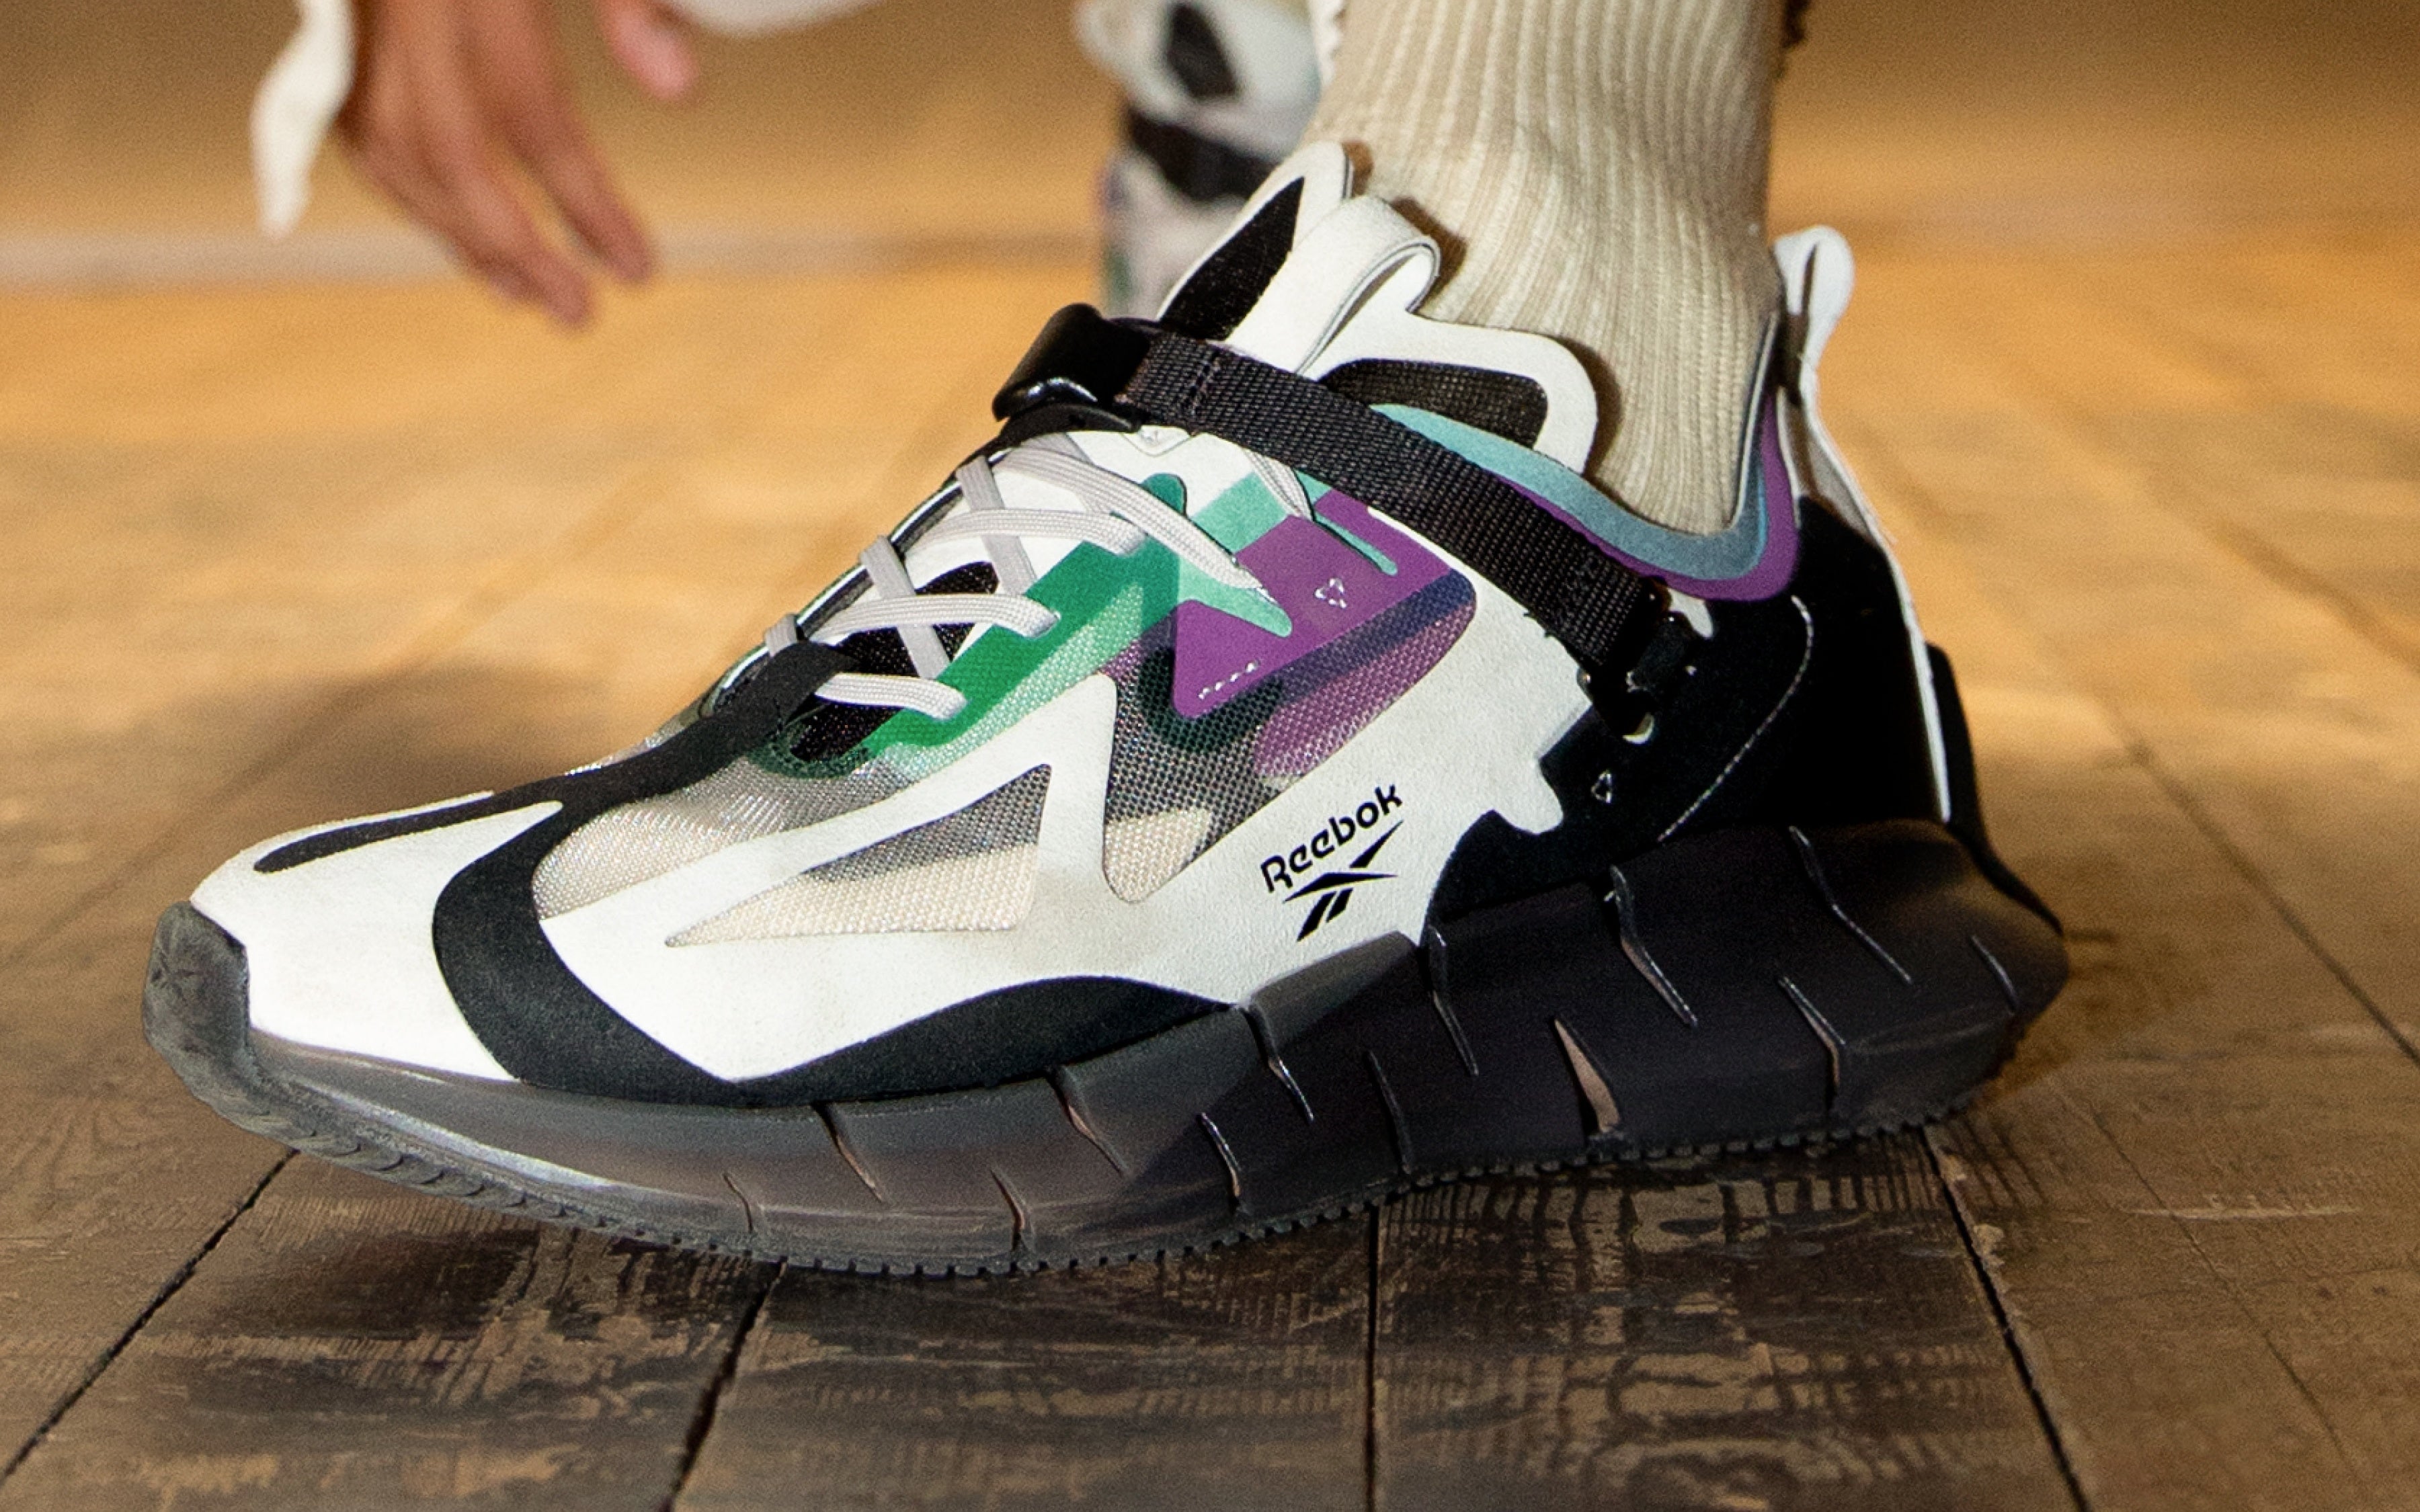 Reebok's Zig Kinetic Concept_Type 1 Sneaker Has Date Essence